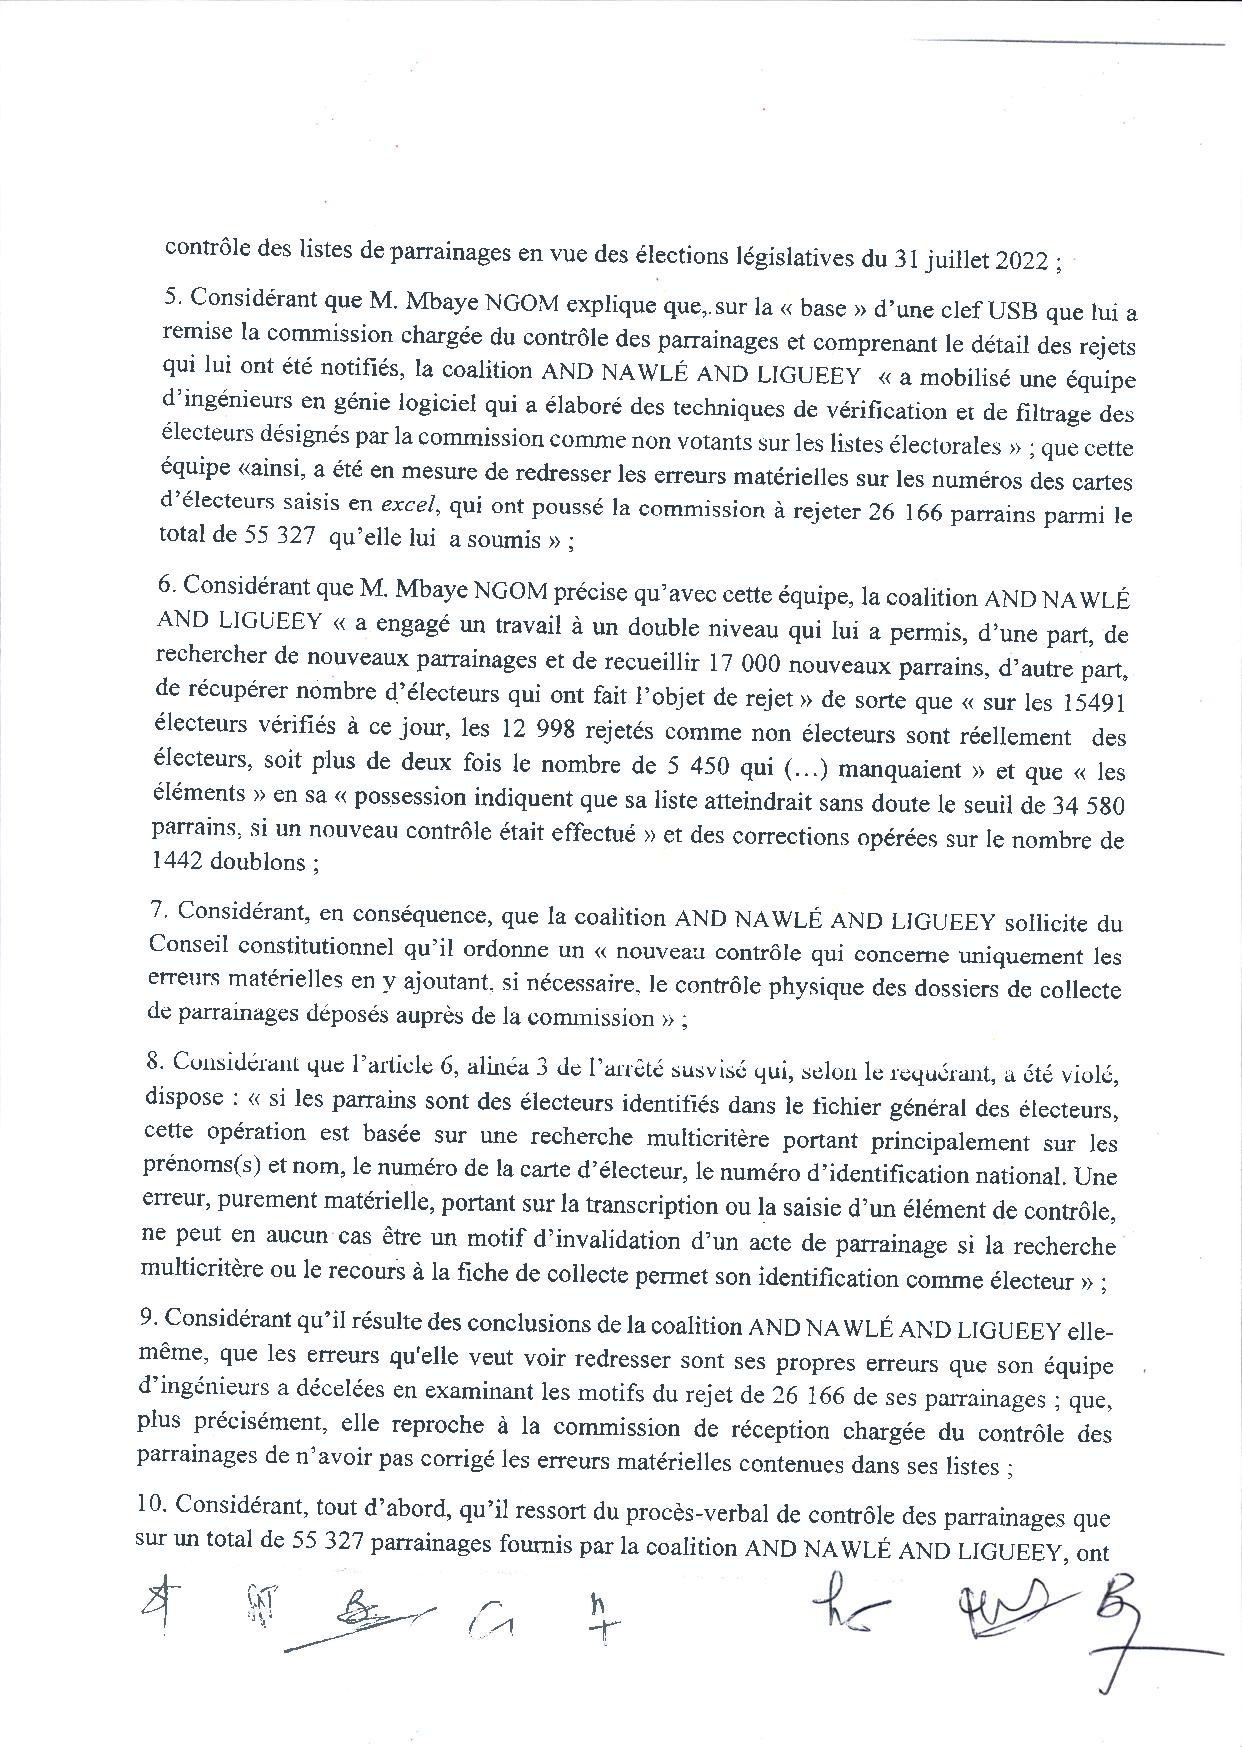 Conseil Constitutionnel : La requête de la coalition AND NAWLÉ AND LIGUEEY, rejetée (Document)